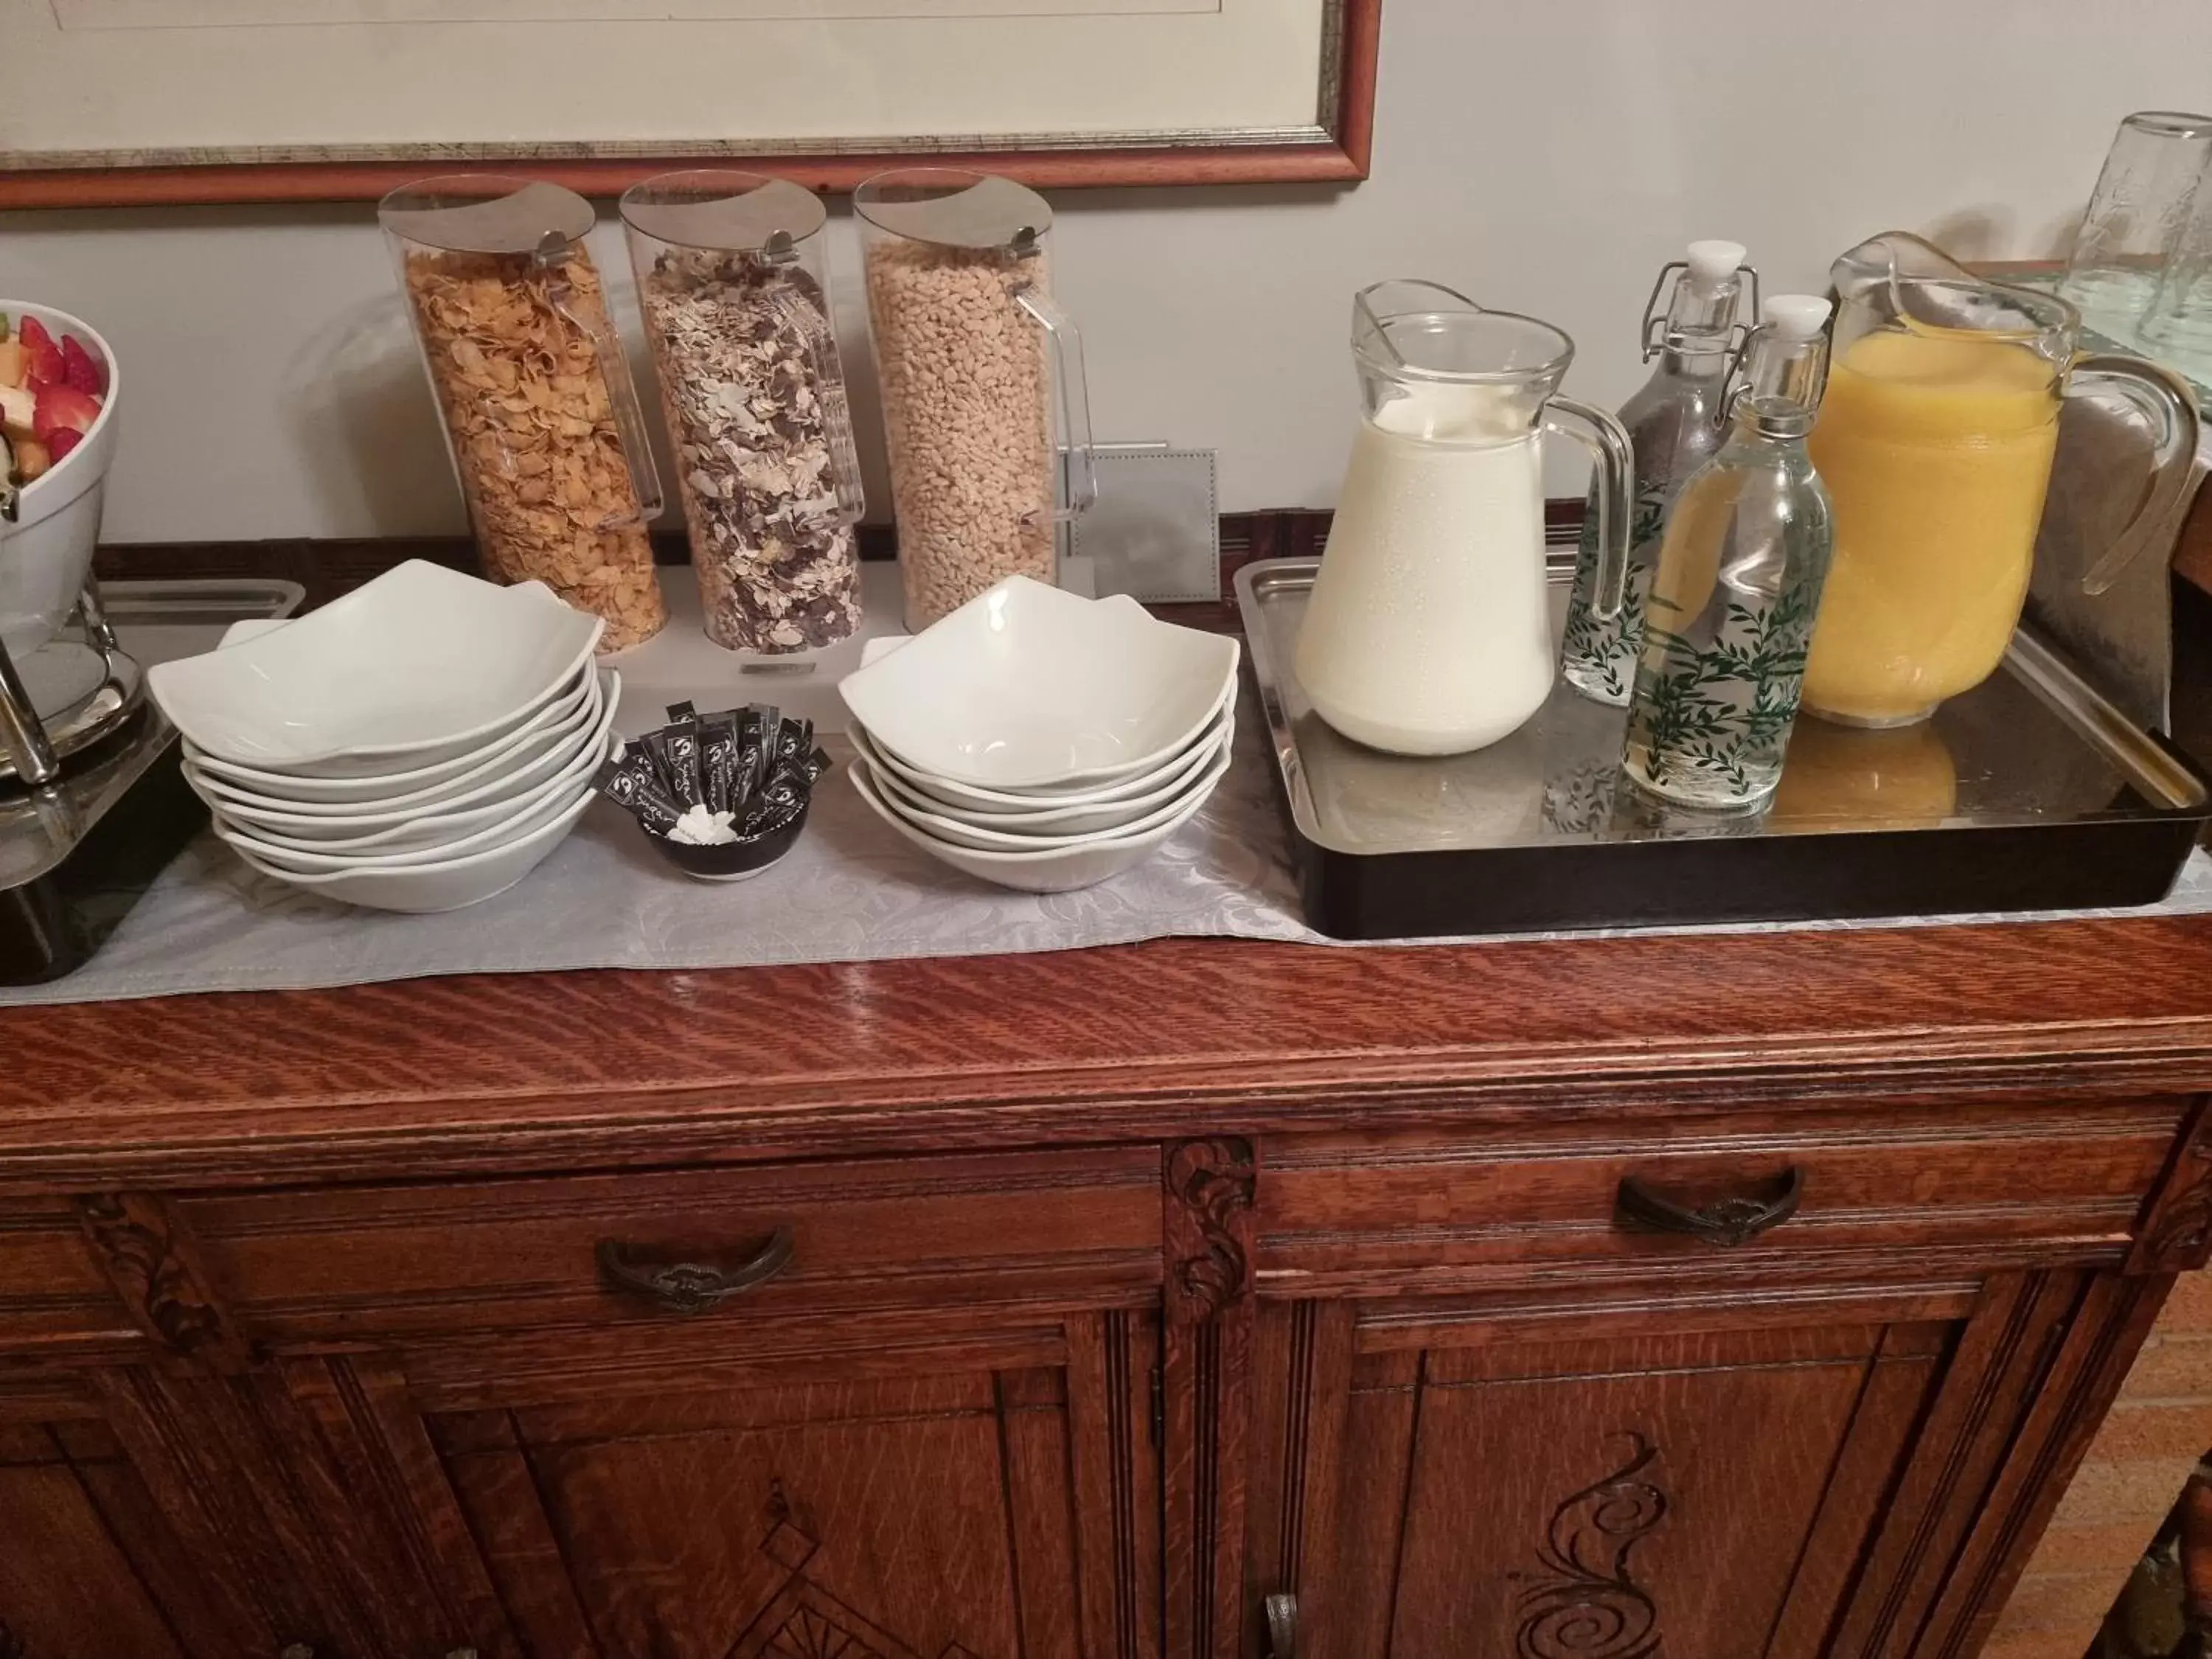 Buffet breakfast in St Leonards Guest House